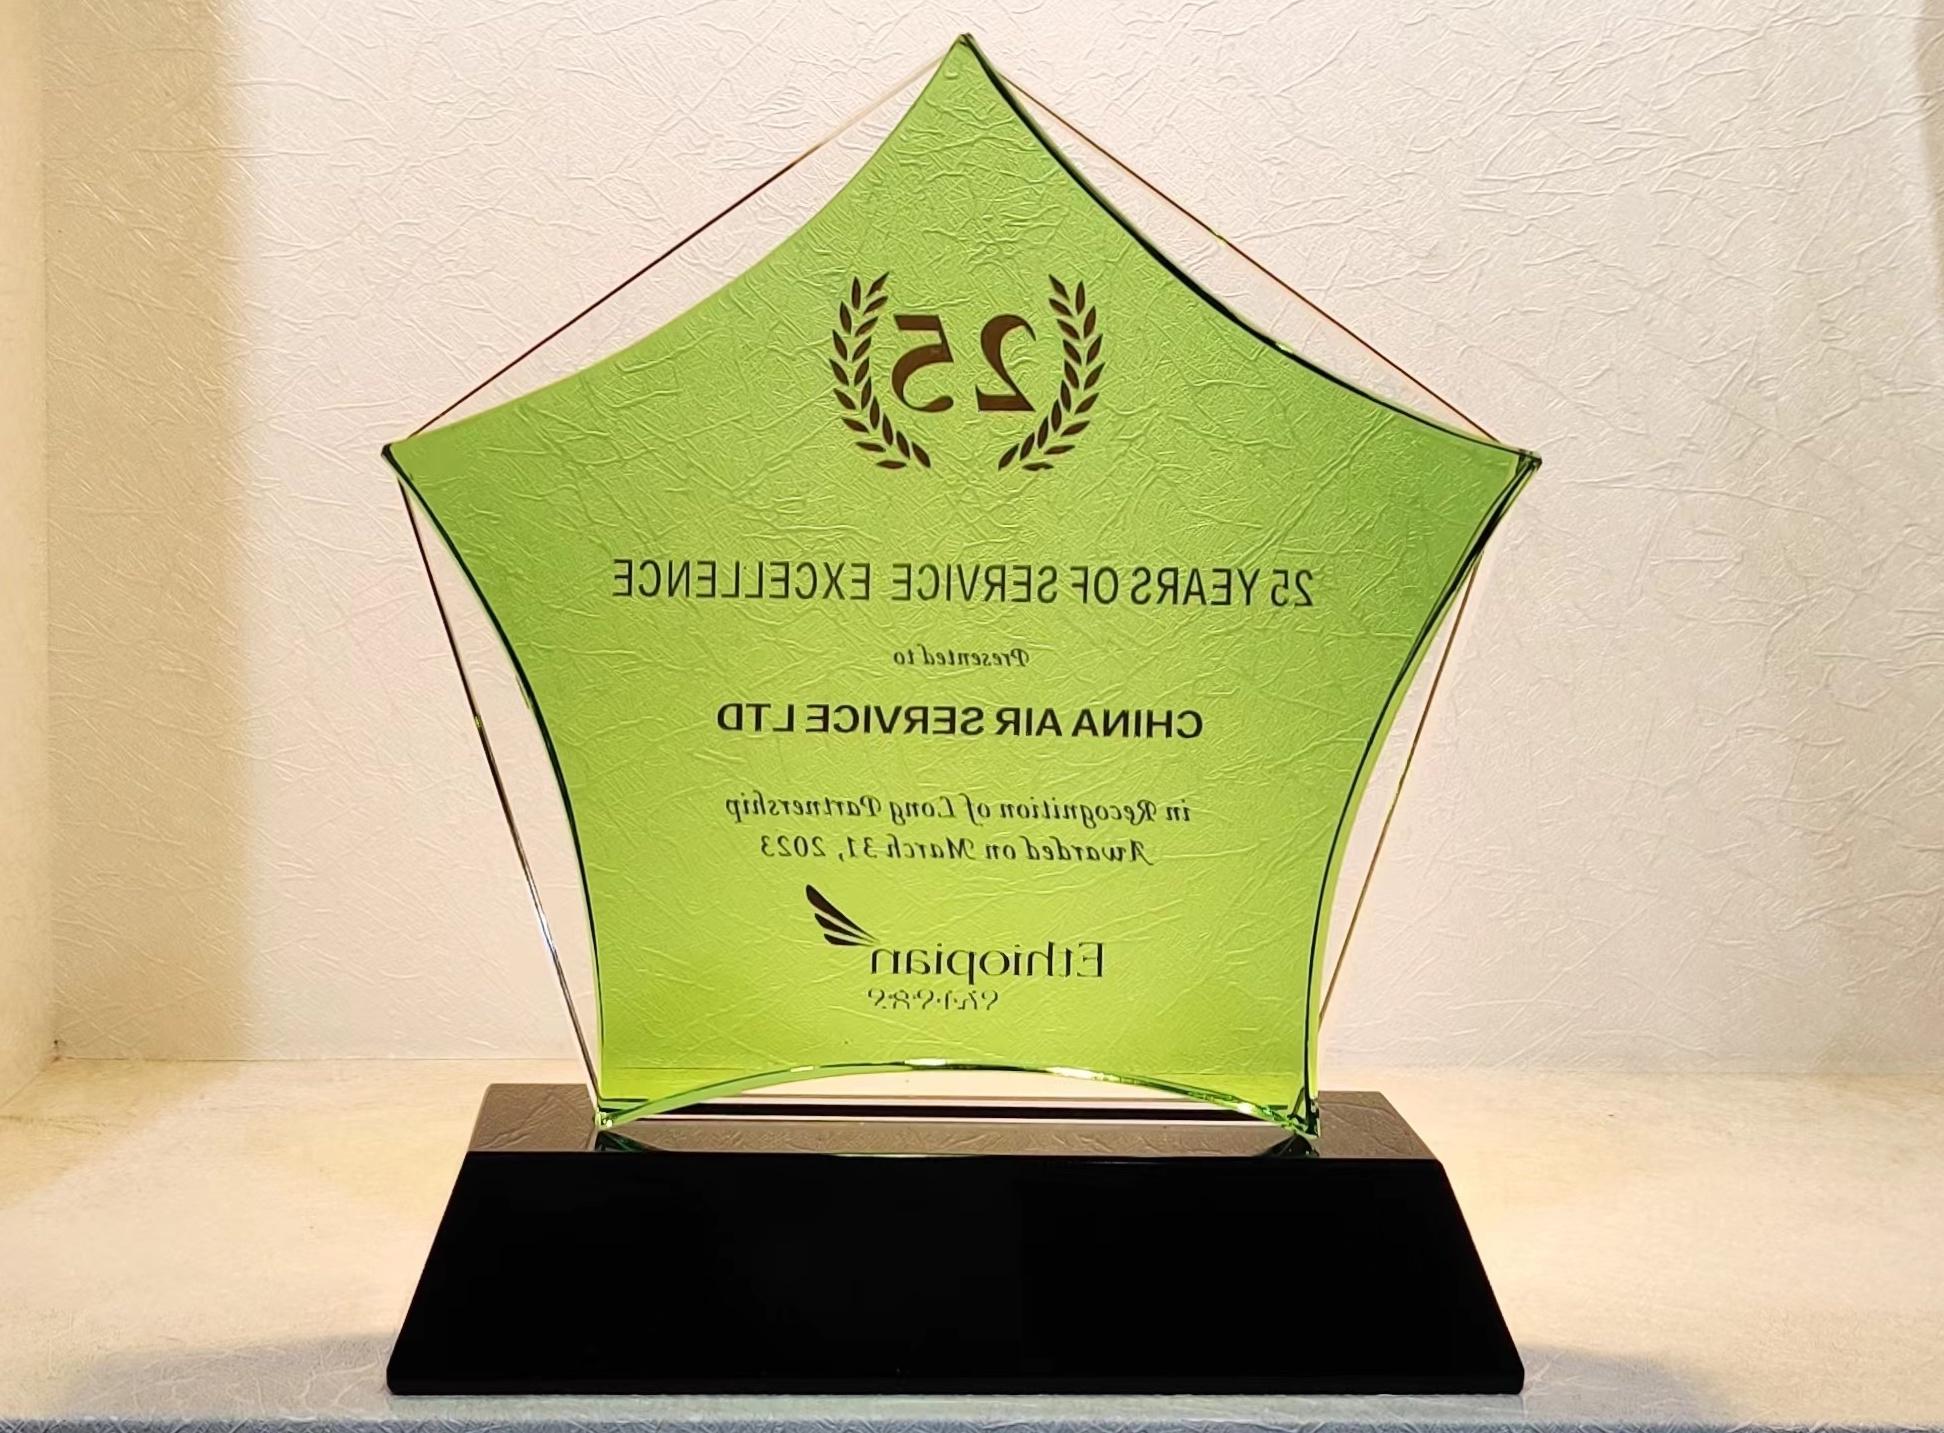 埃塞俄比亚航空-25年最佳合作伙伴奖.jpeg